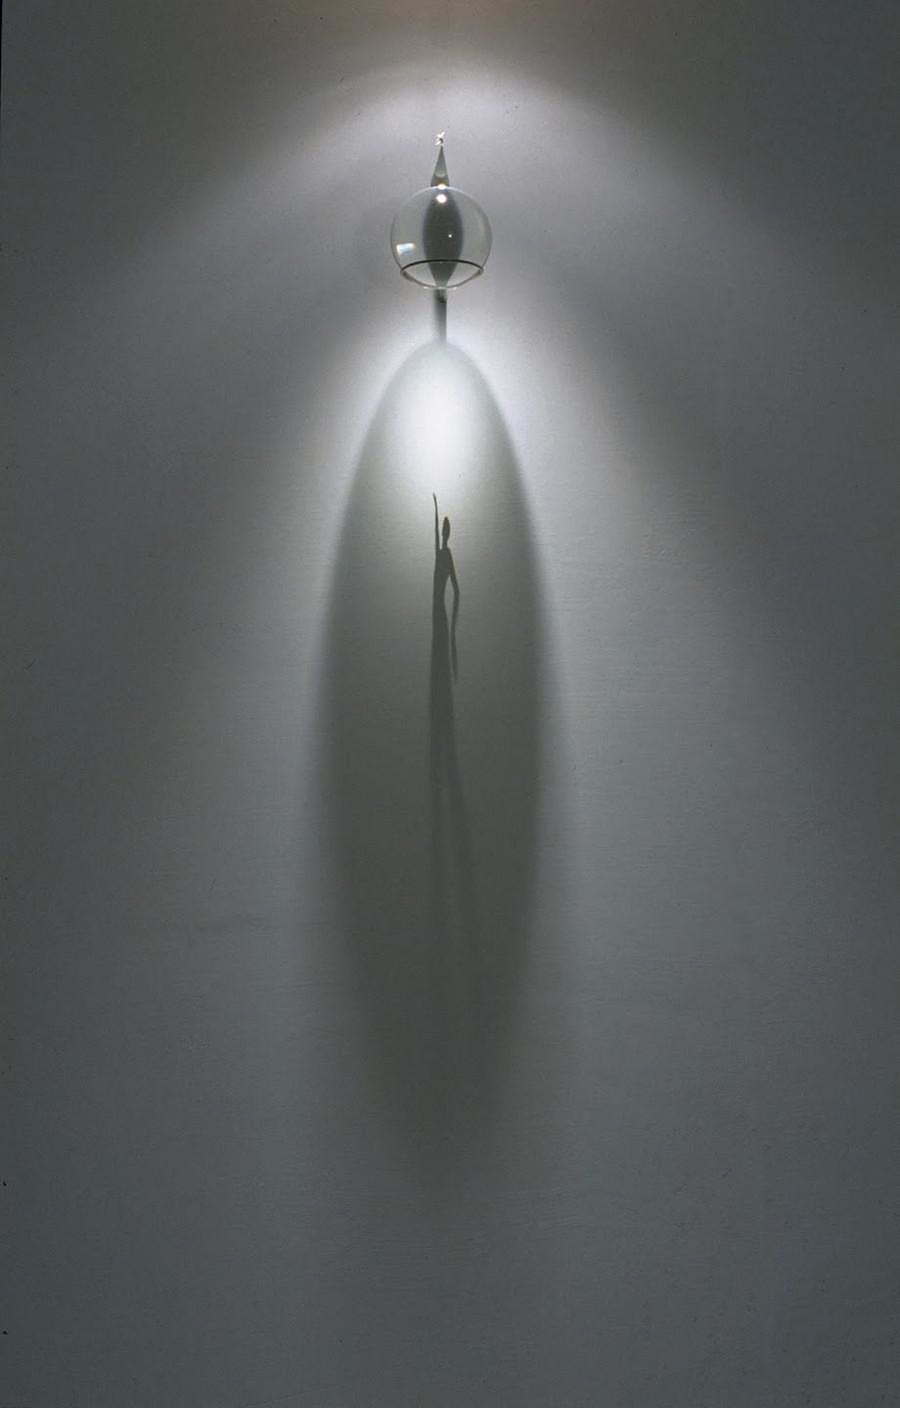 Shadow Art by Fabrizio Corneli.